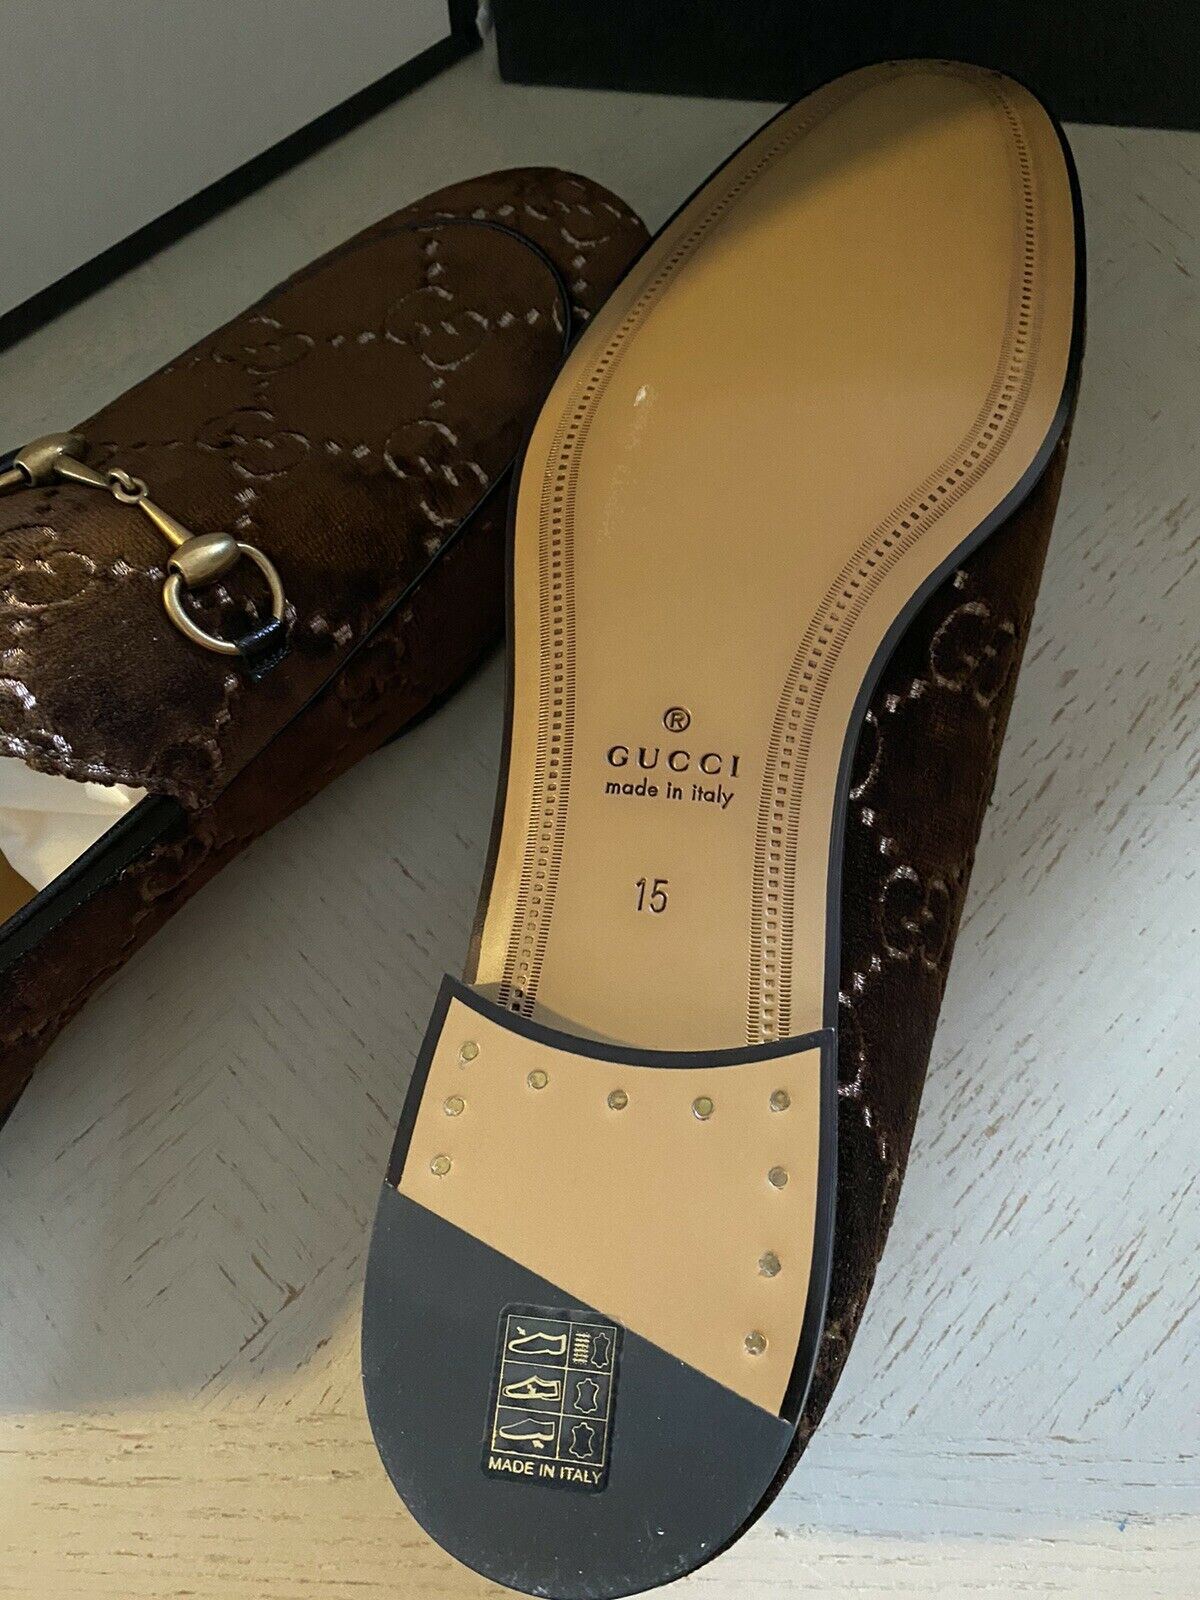 NIB Gucci Мужские бархатные/кожаные лоферы GG Коричневые 16 США (15 Великобритания) Италия